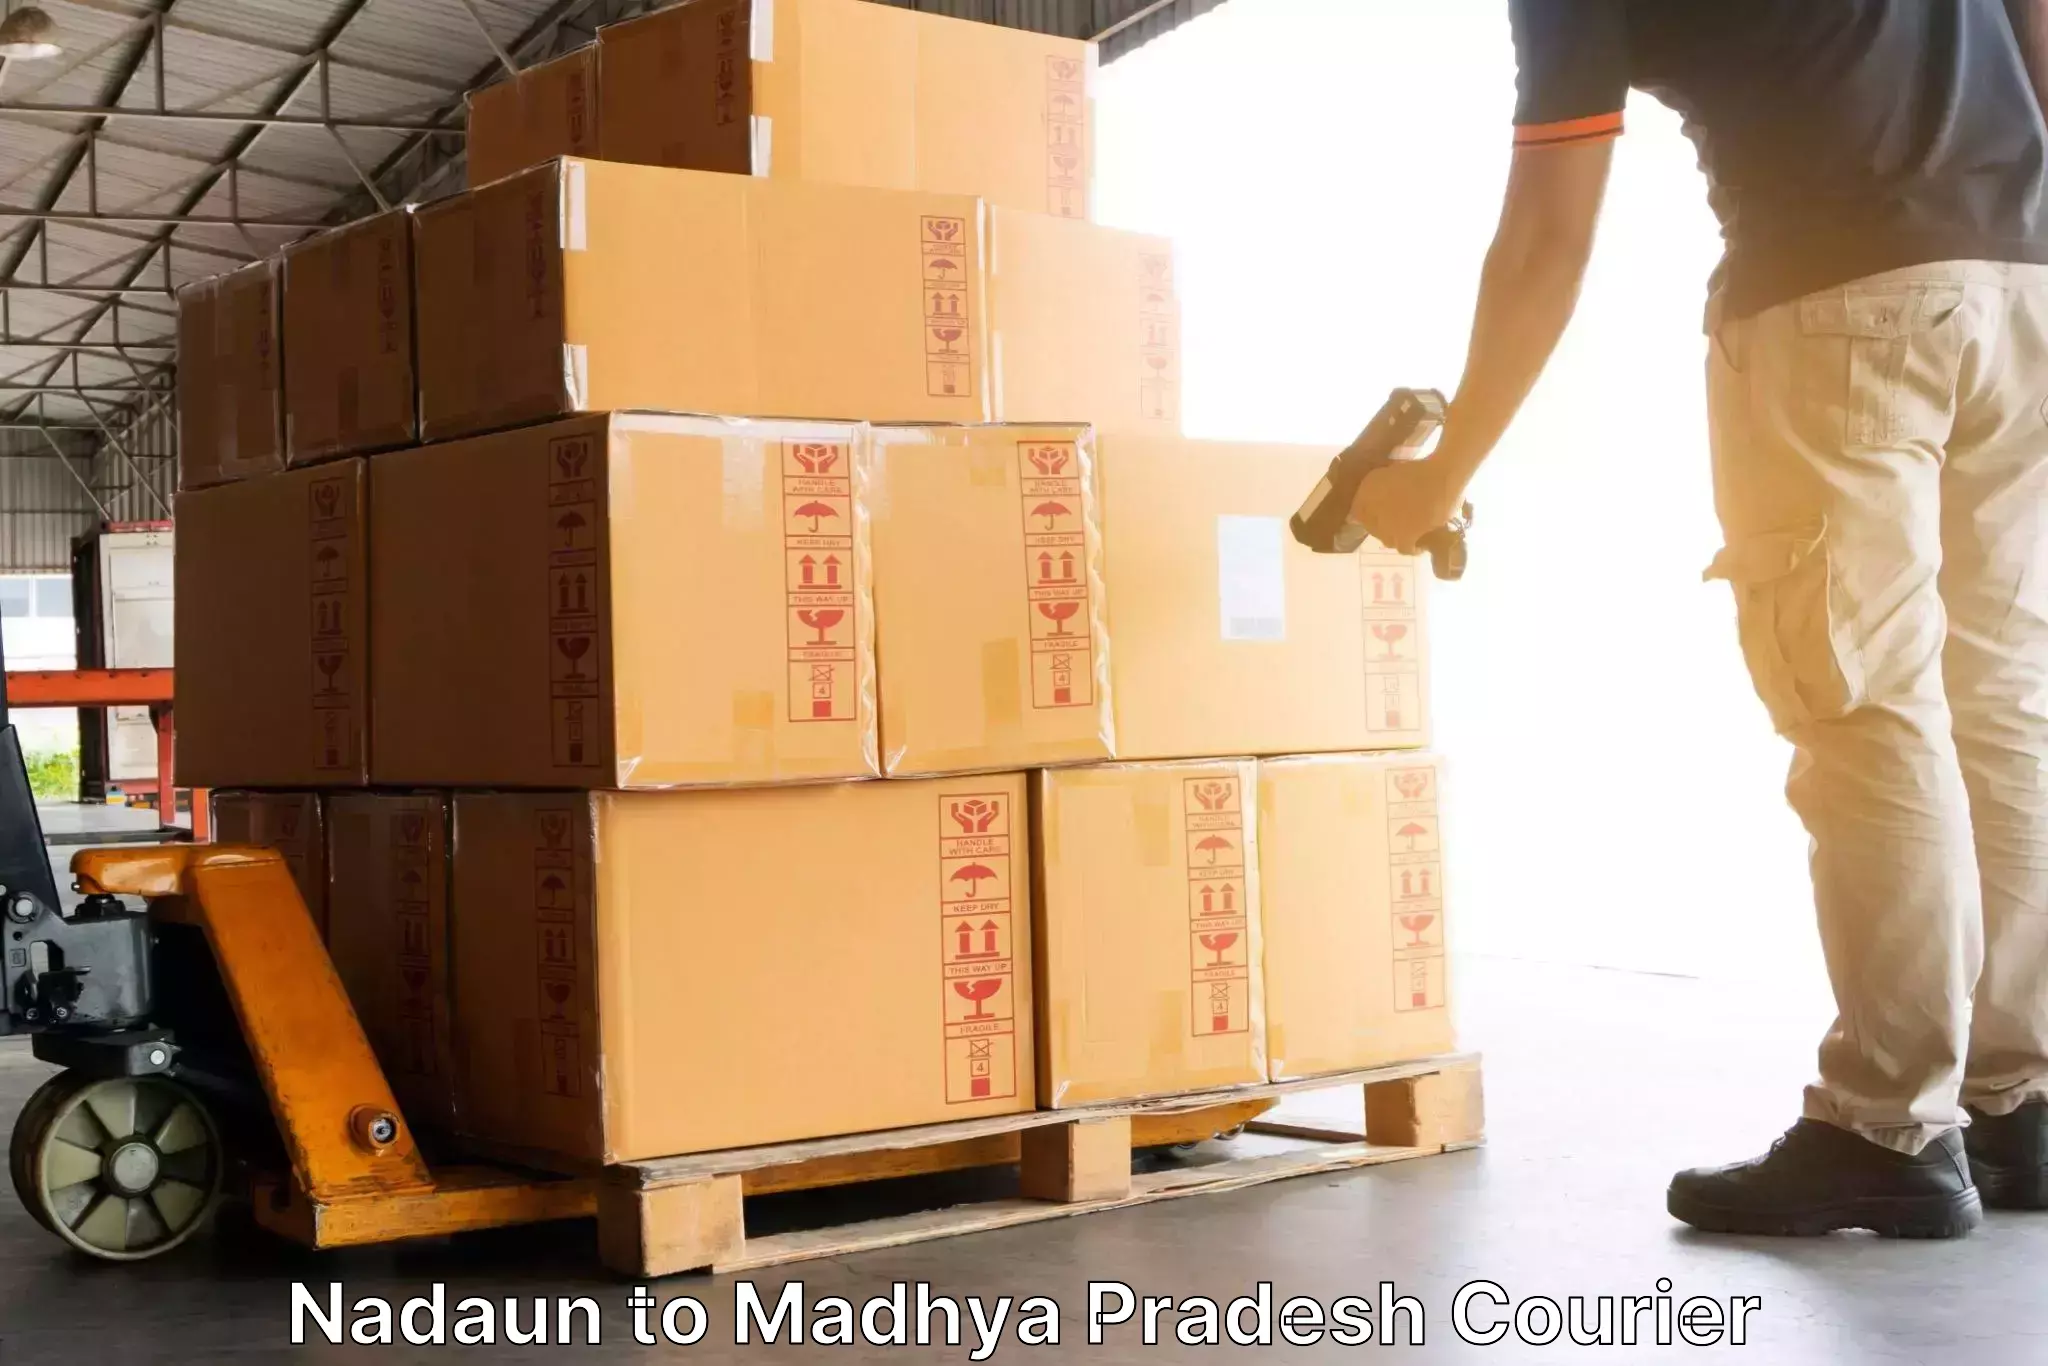 Tracking updates in Nadaun to Madhya Pradesh